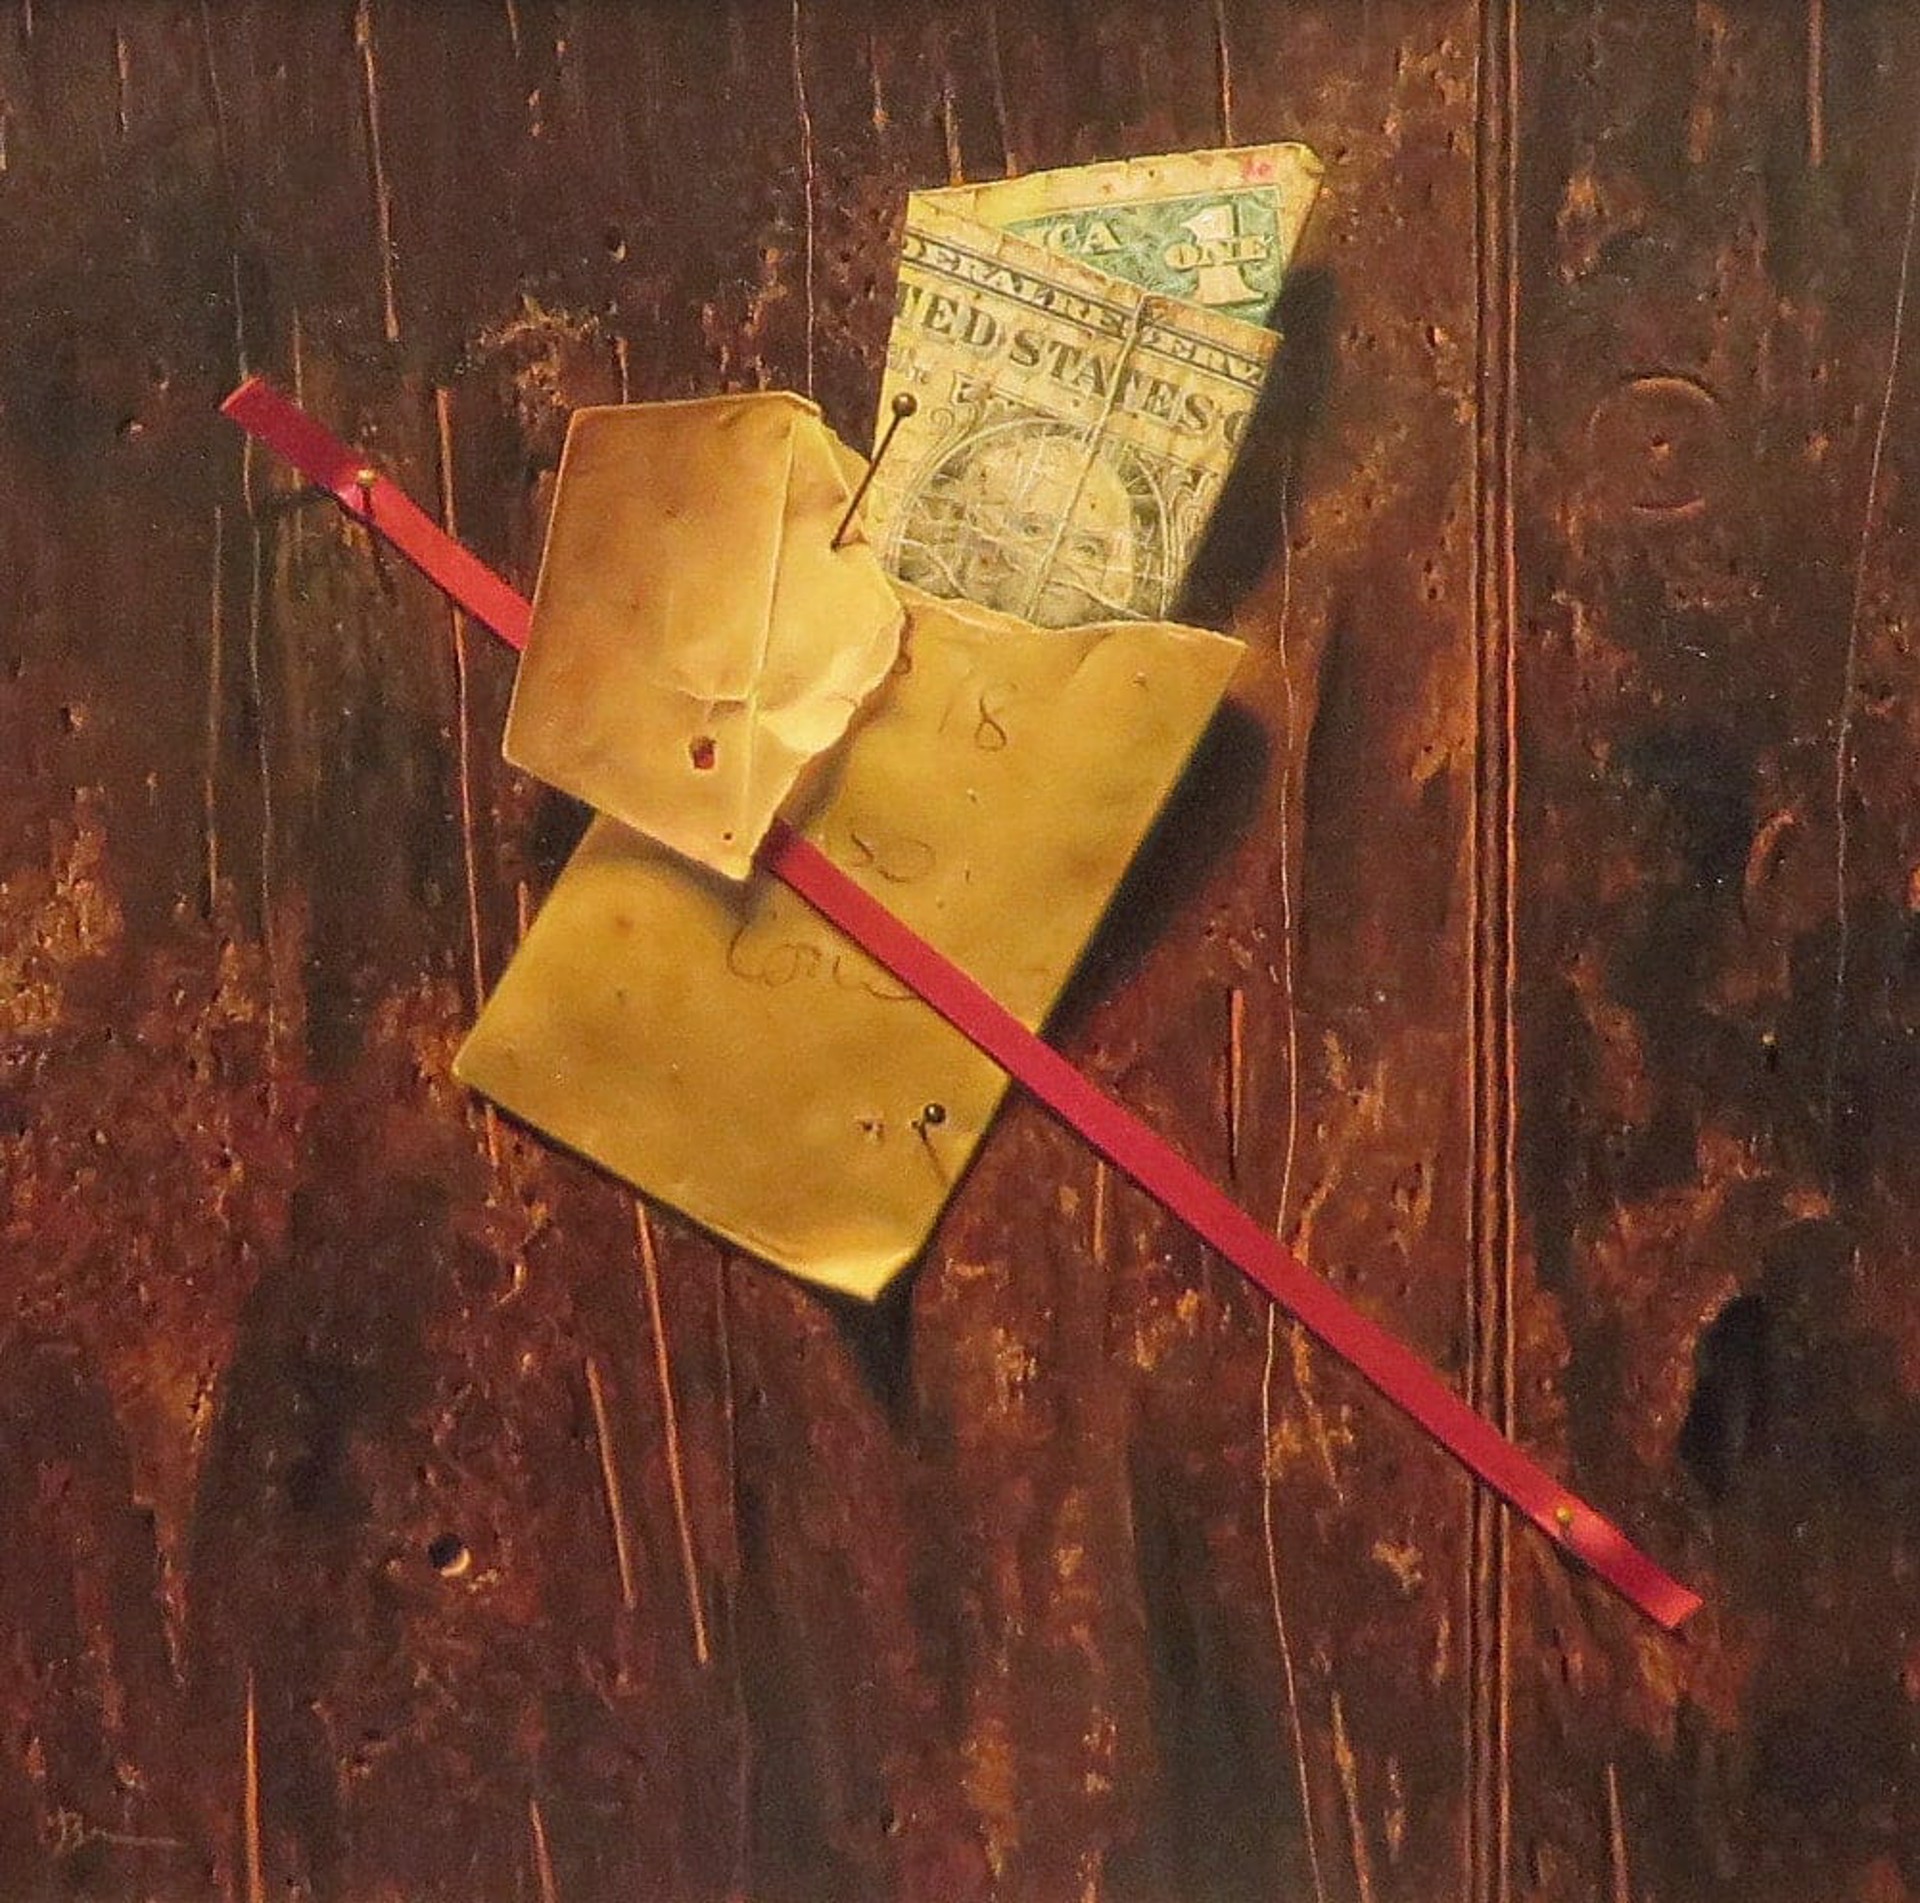 The Single Envelope by Dan Brown